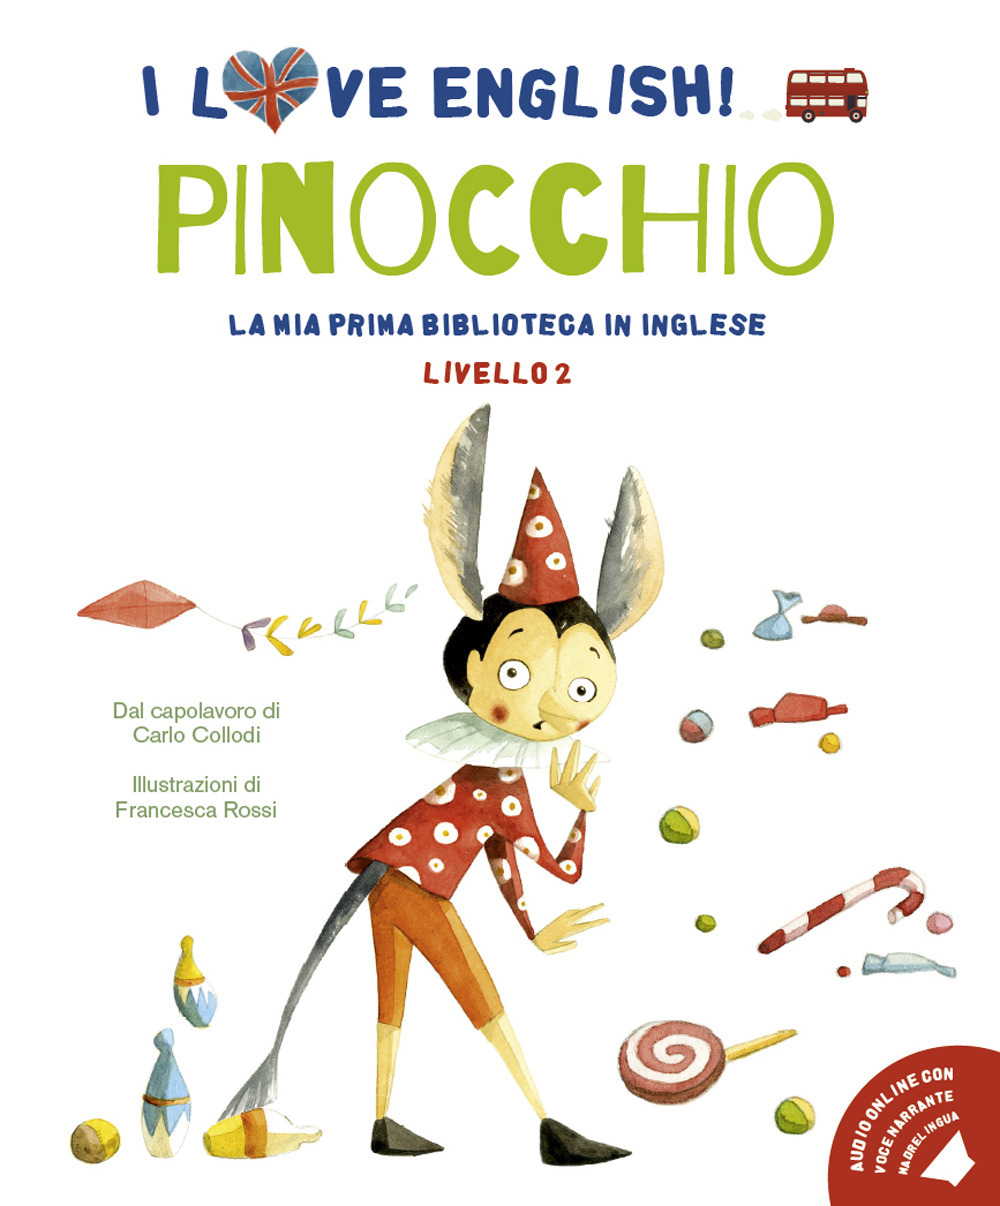 Pinocchio dal capolavoro di Carlo Collodi. Livello 2. Ediz. italiana e inglese. Con File audio per il download